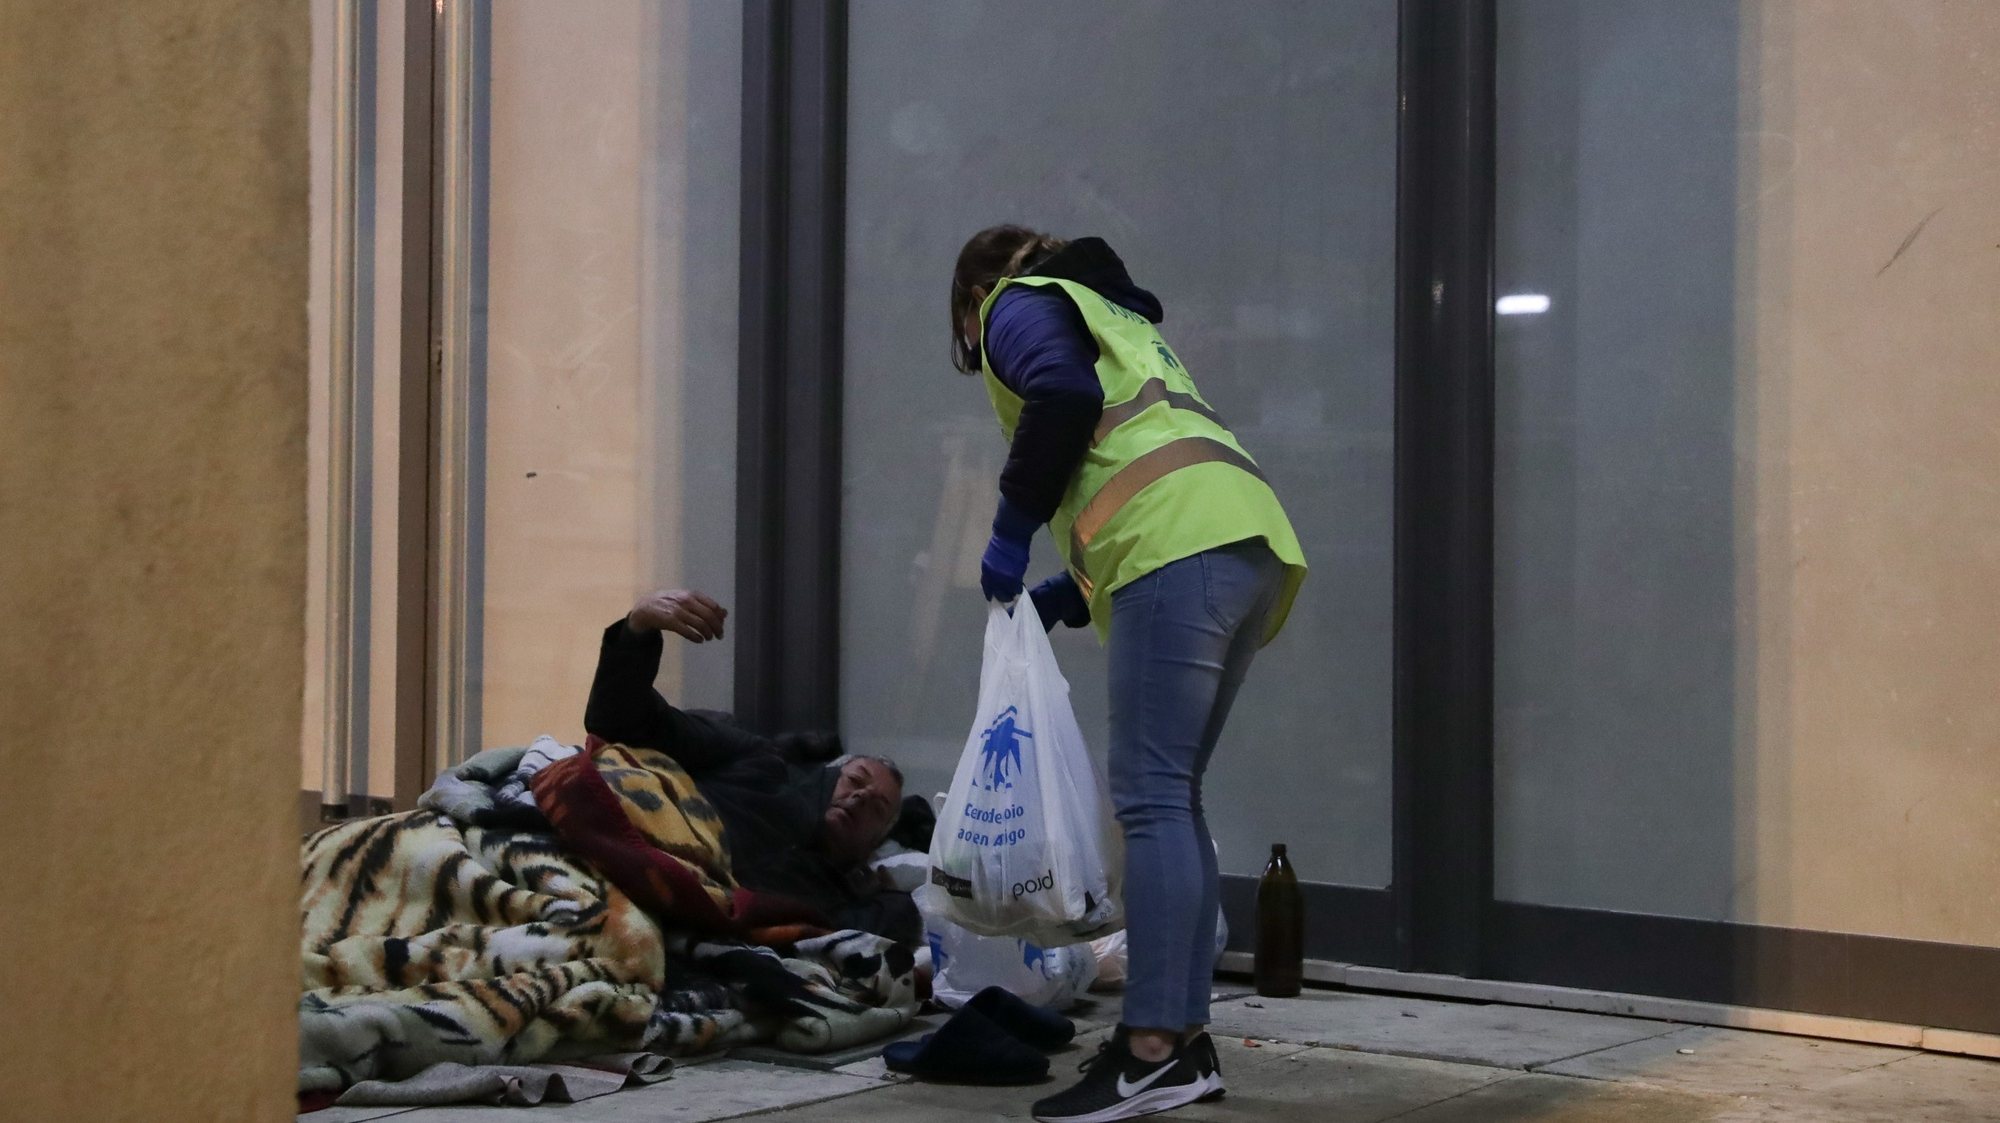 Uma voluntária da associação CASA (Centro de apoio aos sem-abrigo) durante uma ronda de distribuíção de refeições pela cidade de Lisboa, 28 de março de 2020. ACOMPANHA TEXTO DO DIA 28 DE MARÇO DE 2020. TIAGO PETINGA/LUSA